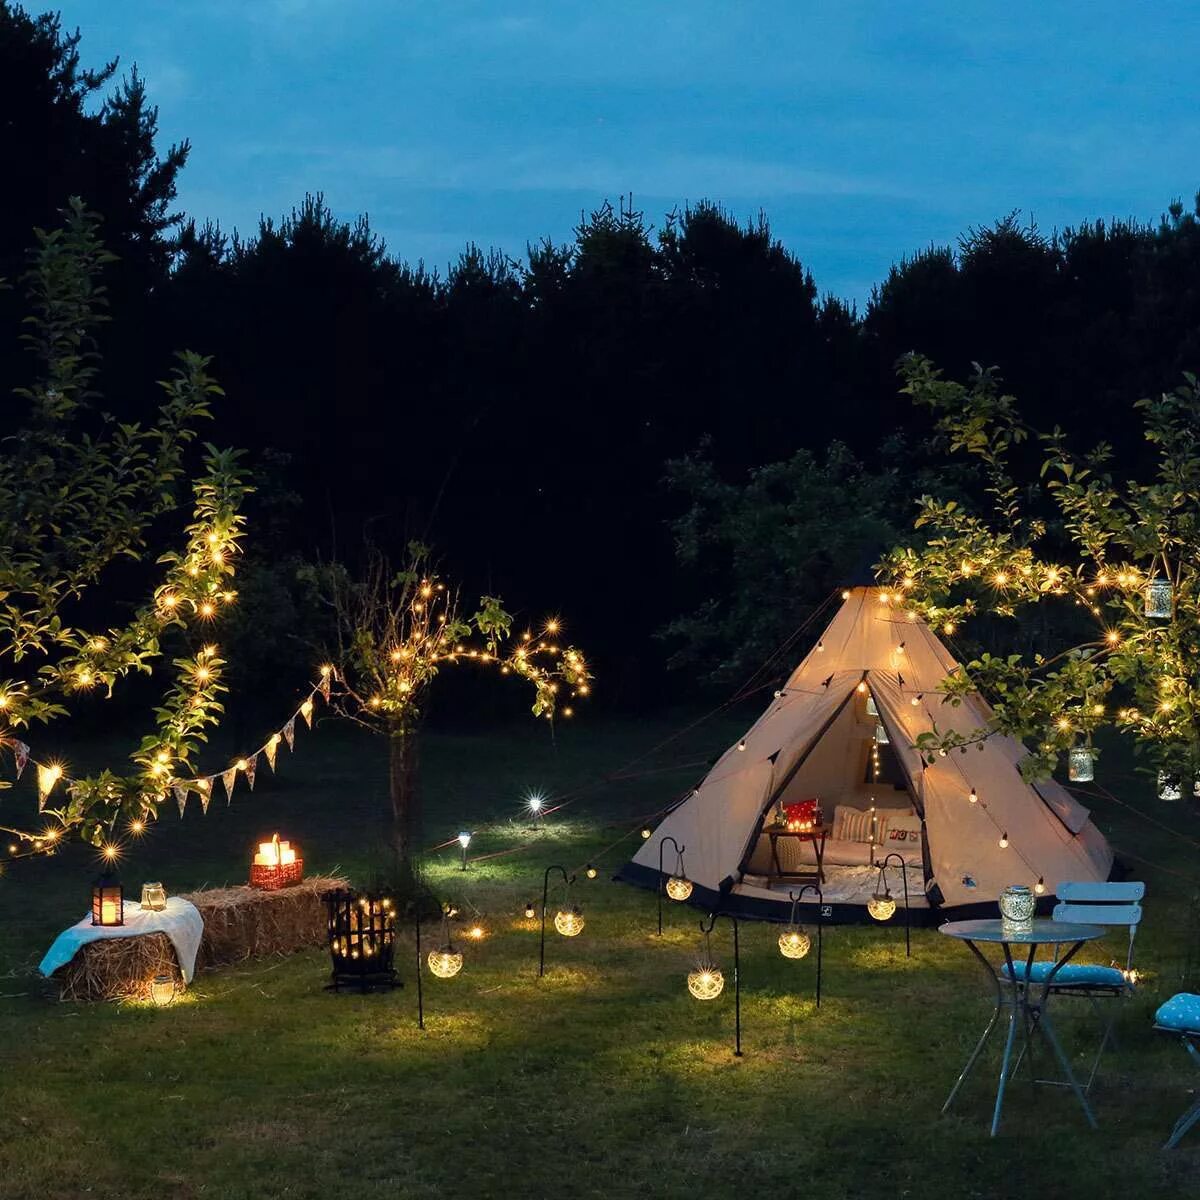 Light camp. Tent Camping Lights. Solar Camping Light xc50. Уличное освещение кемпинга. Свет для кемпинга.